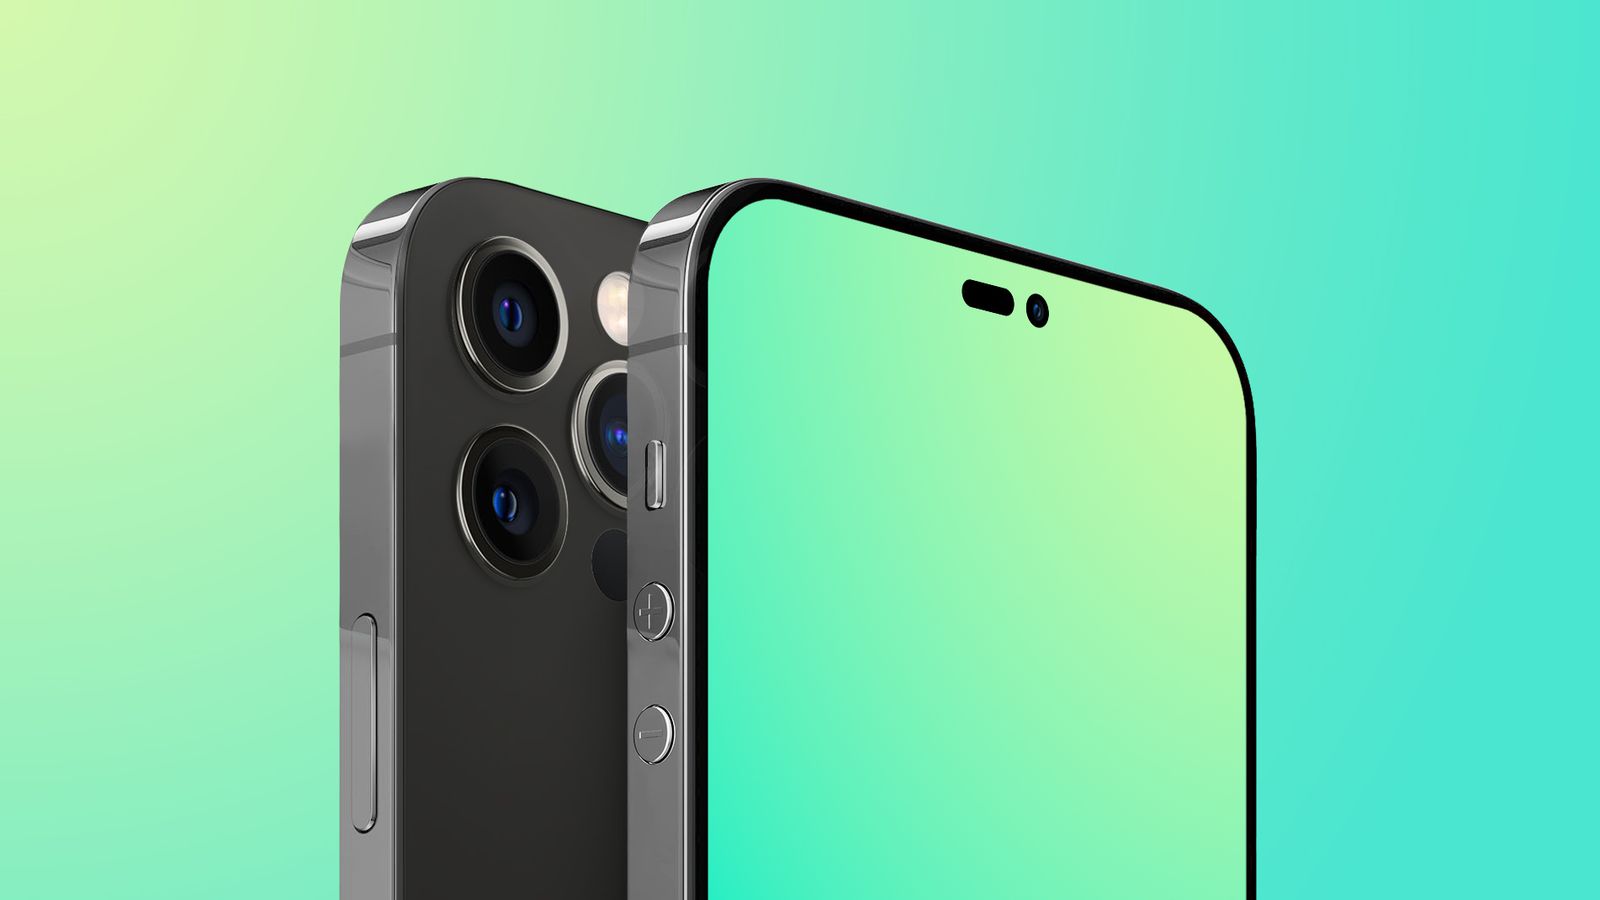 Khám phá cảm giác đầu tiên khi nhìn thấy iPhone 14 Pro đầy ấn tượng với thiết kế sang trọng và hiện đại. Đắm chìm trong thế giới đa chiều của màn hình OLED Super Retina XDR sắc nét và trải nghiệm chưa từng có với bộ 3 camera Pro mới nhất của iPhone.